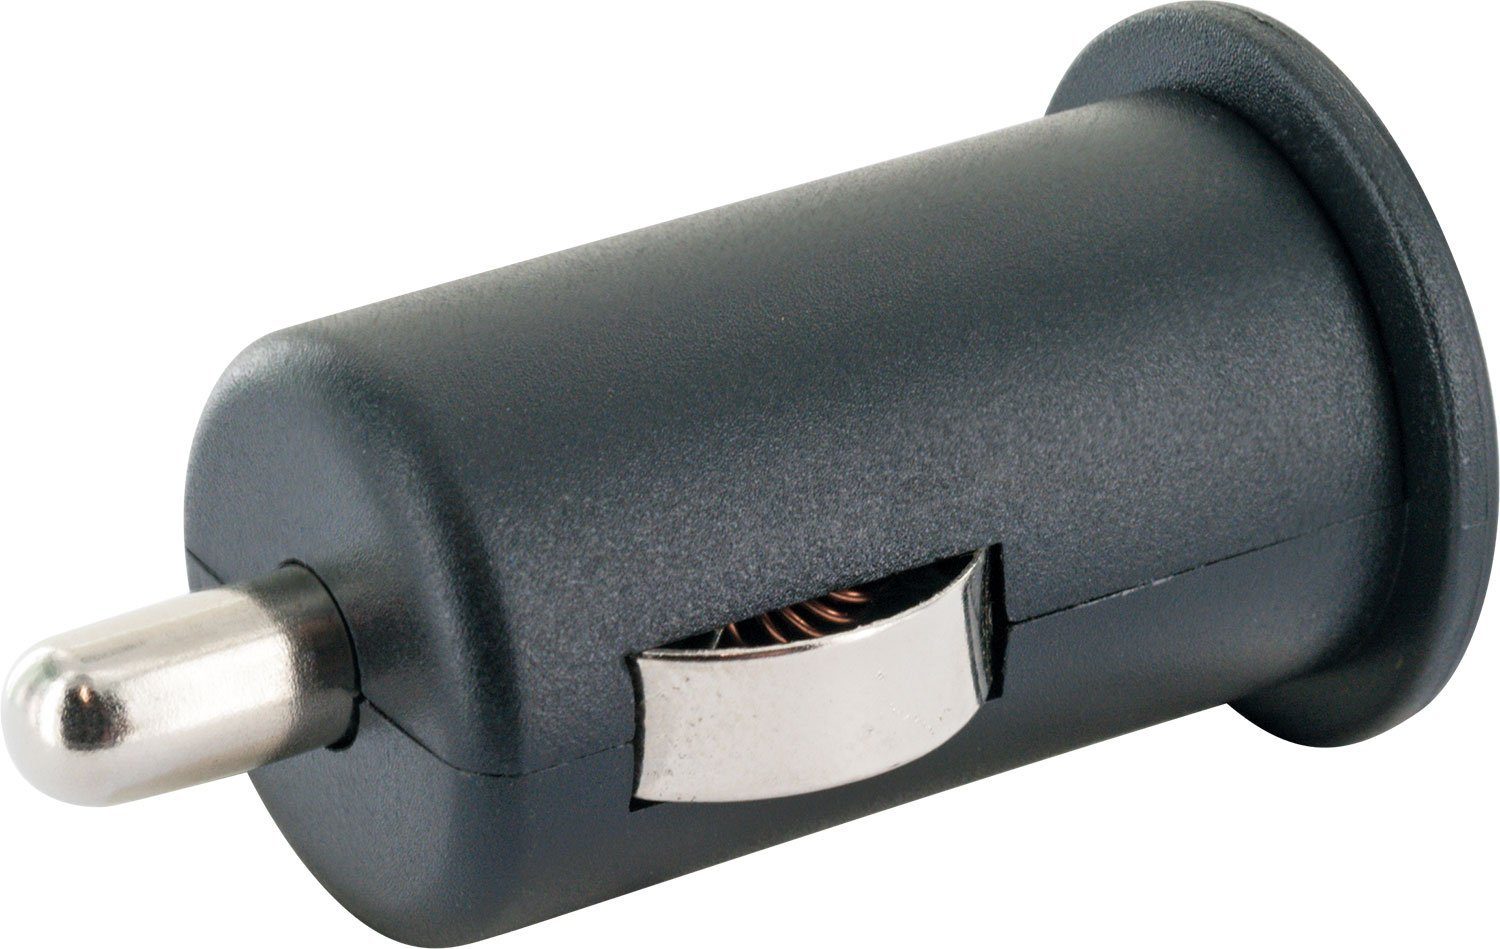 zu KFZ-Adapter integriertes USB Zigarettenanzünder LAD12 2.0 531 Buchse, Schwaiger Multi-Schutz Sicherheitssystem A